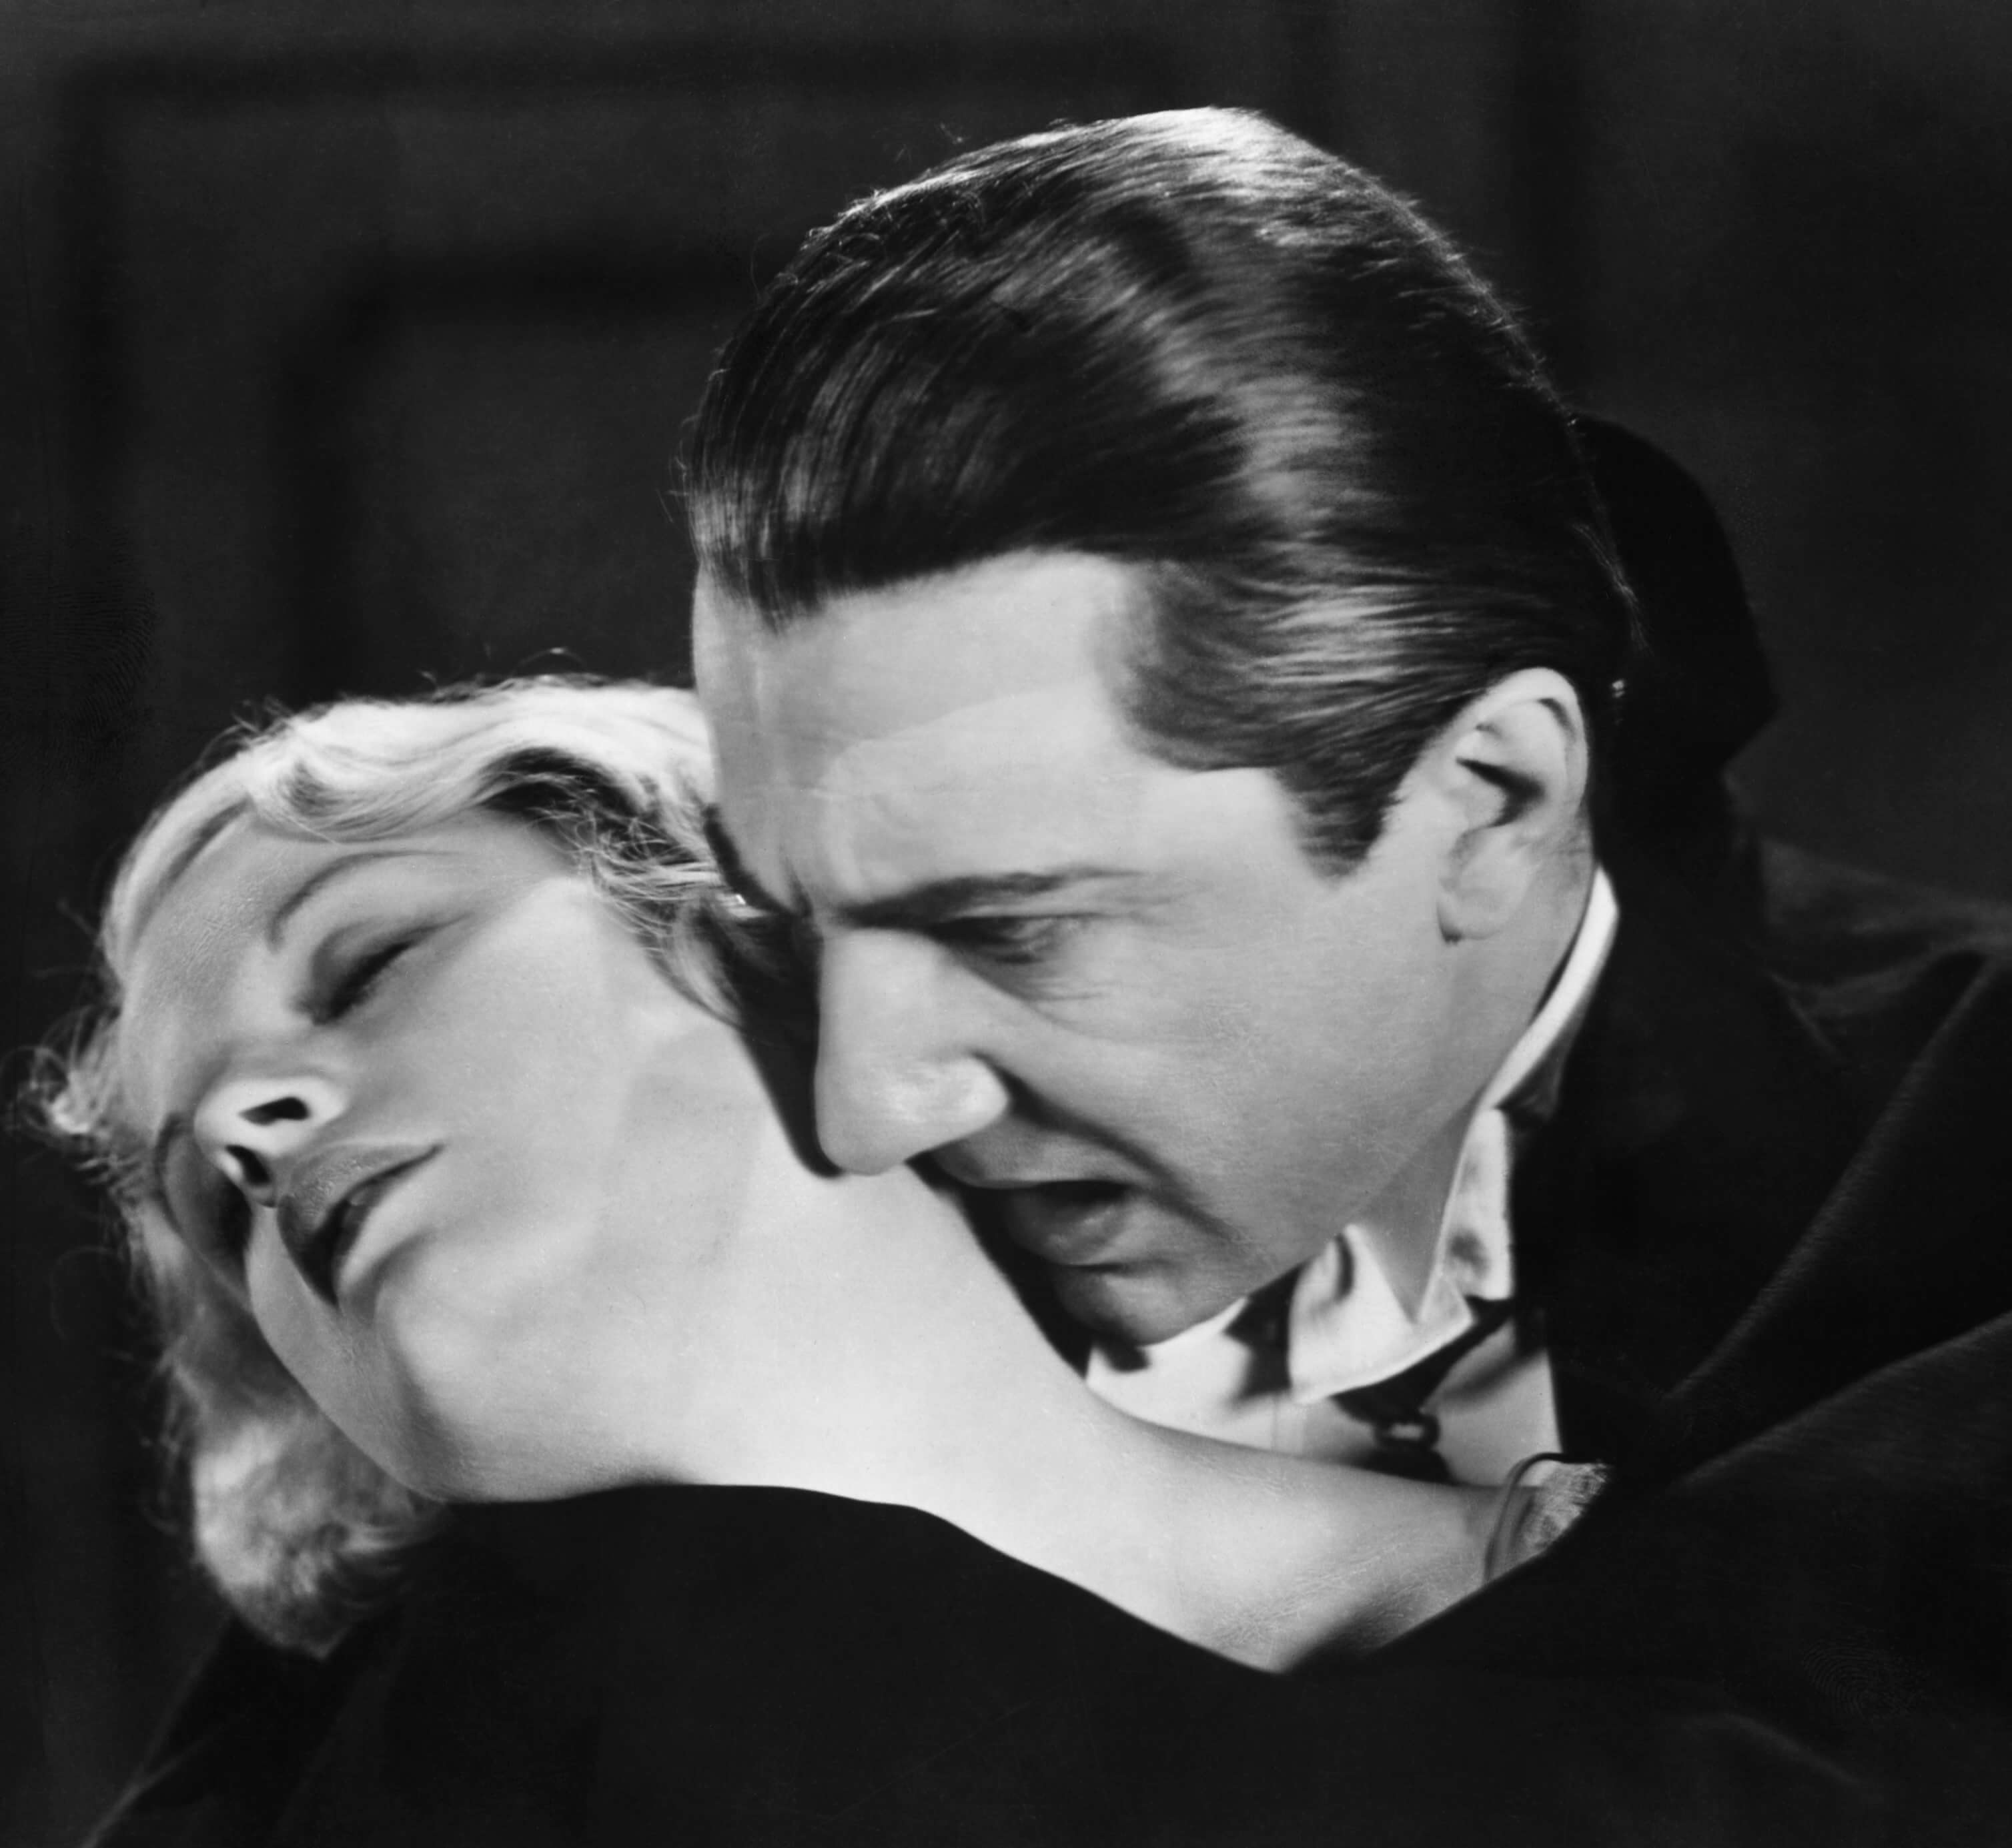 Bela Lugosi, the inspiration behind Bauhaus' "Bela Lugosi's Dead," as Dracula with Helen Chandler as Mina